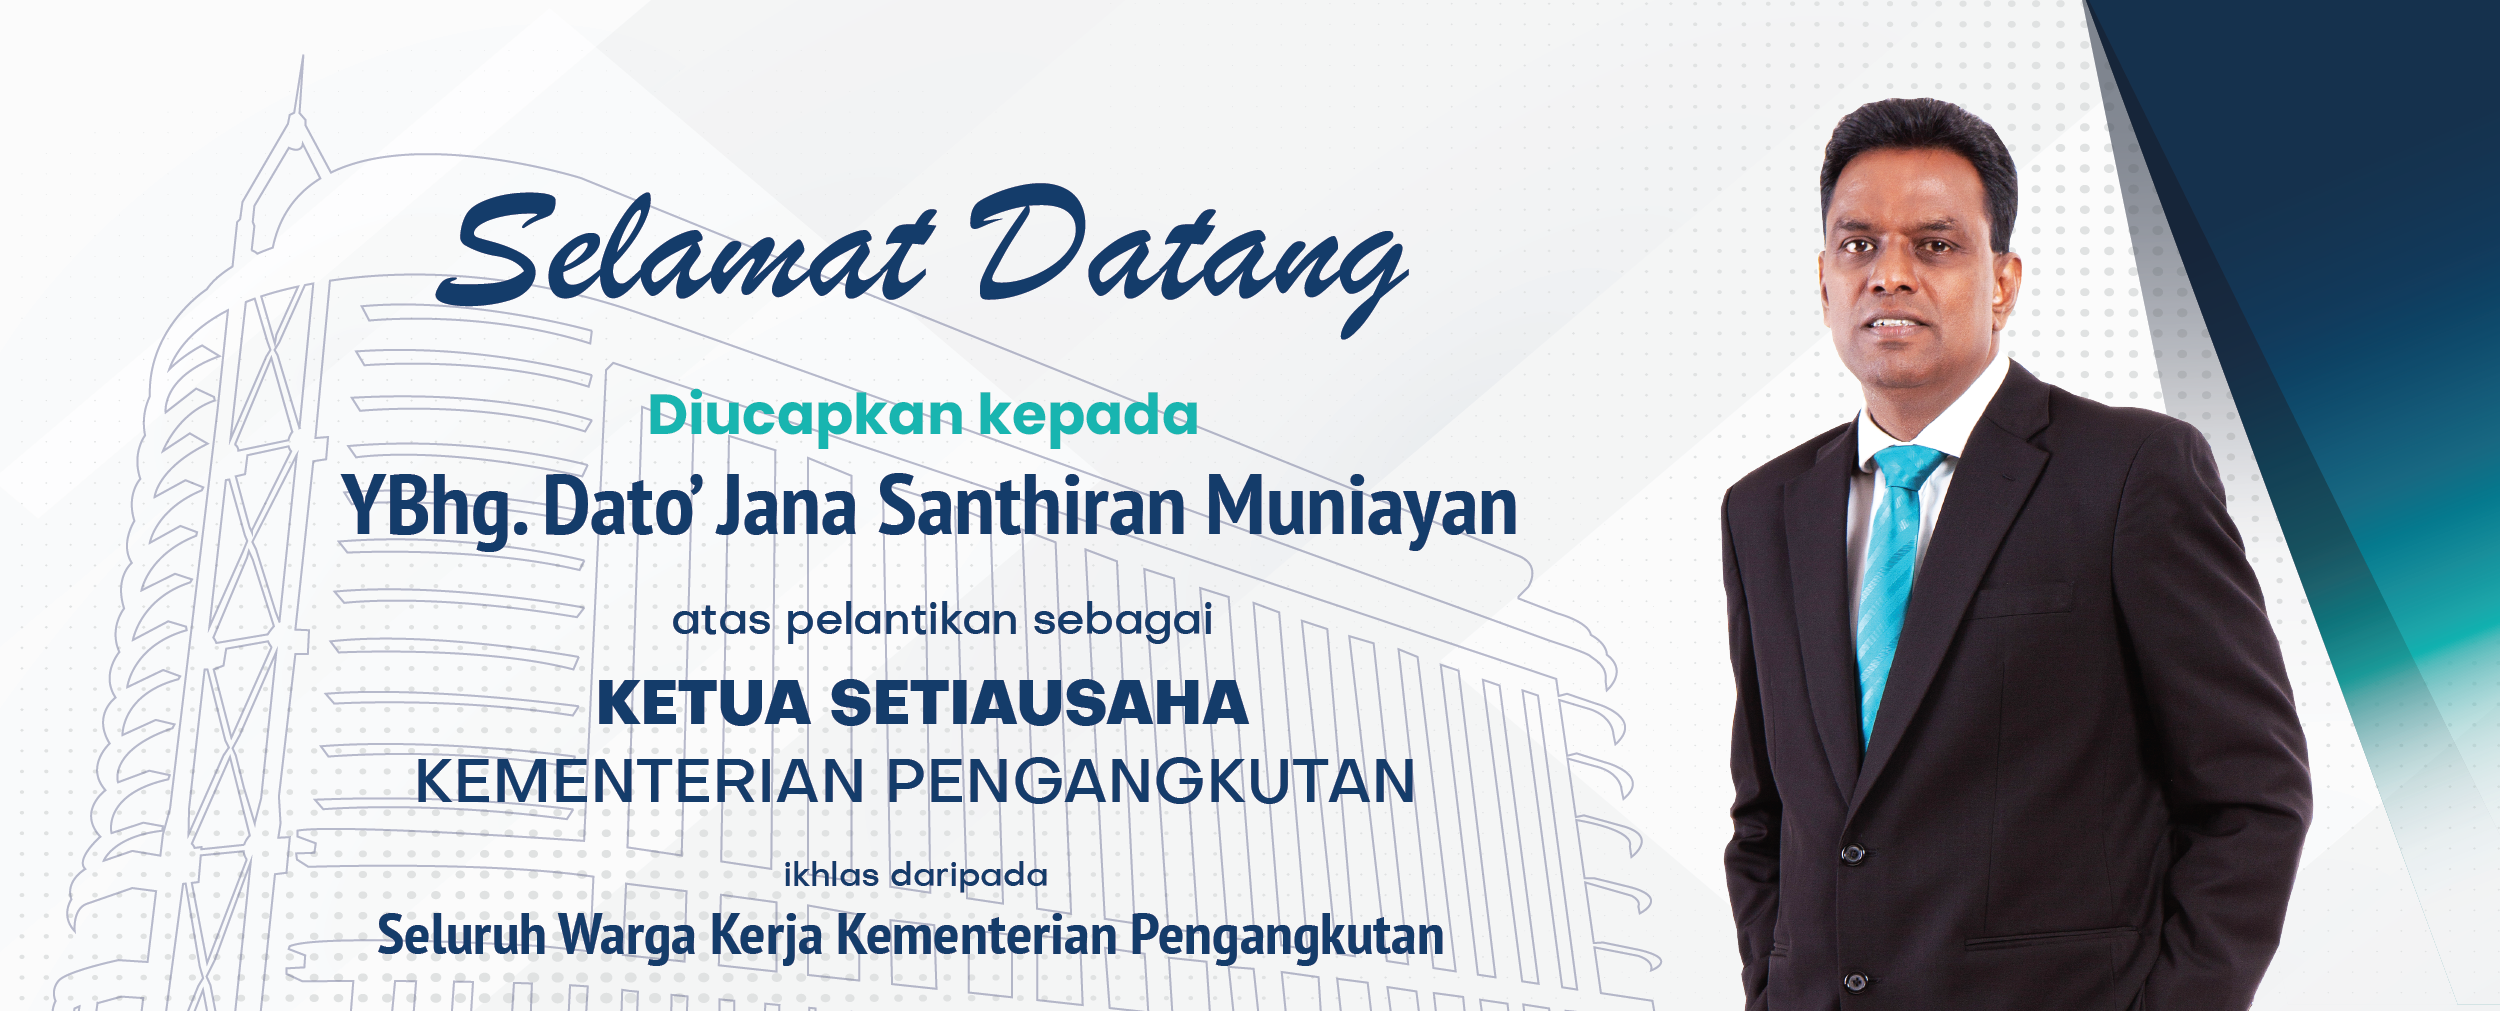 Selamat Datang Dato' Jana Santhiran Muniayan